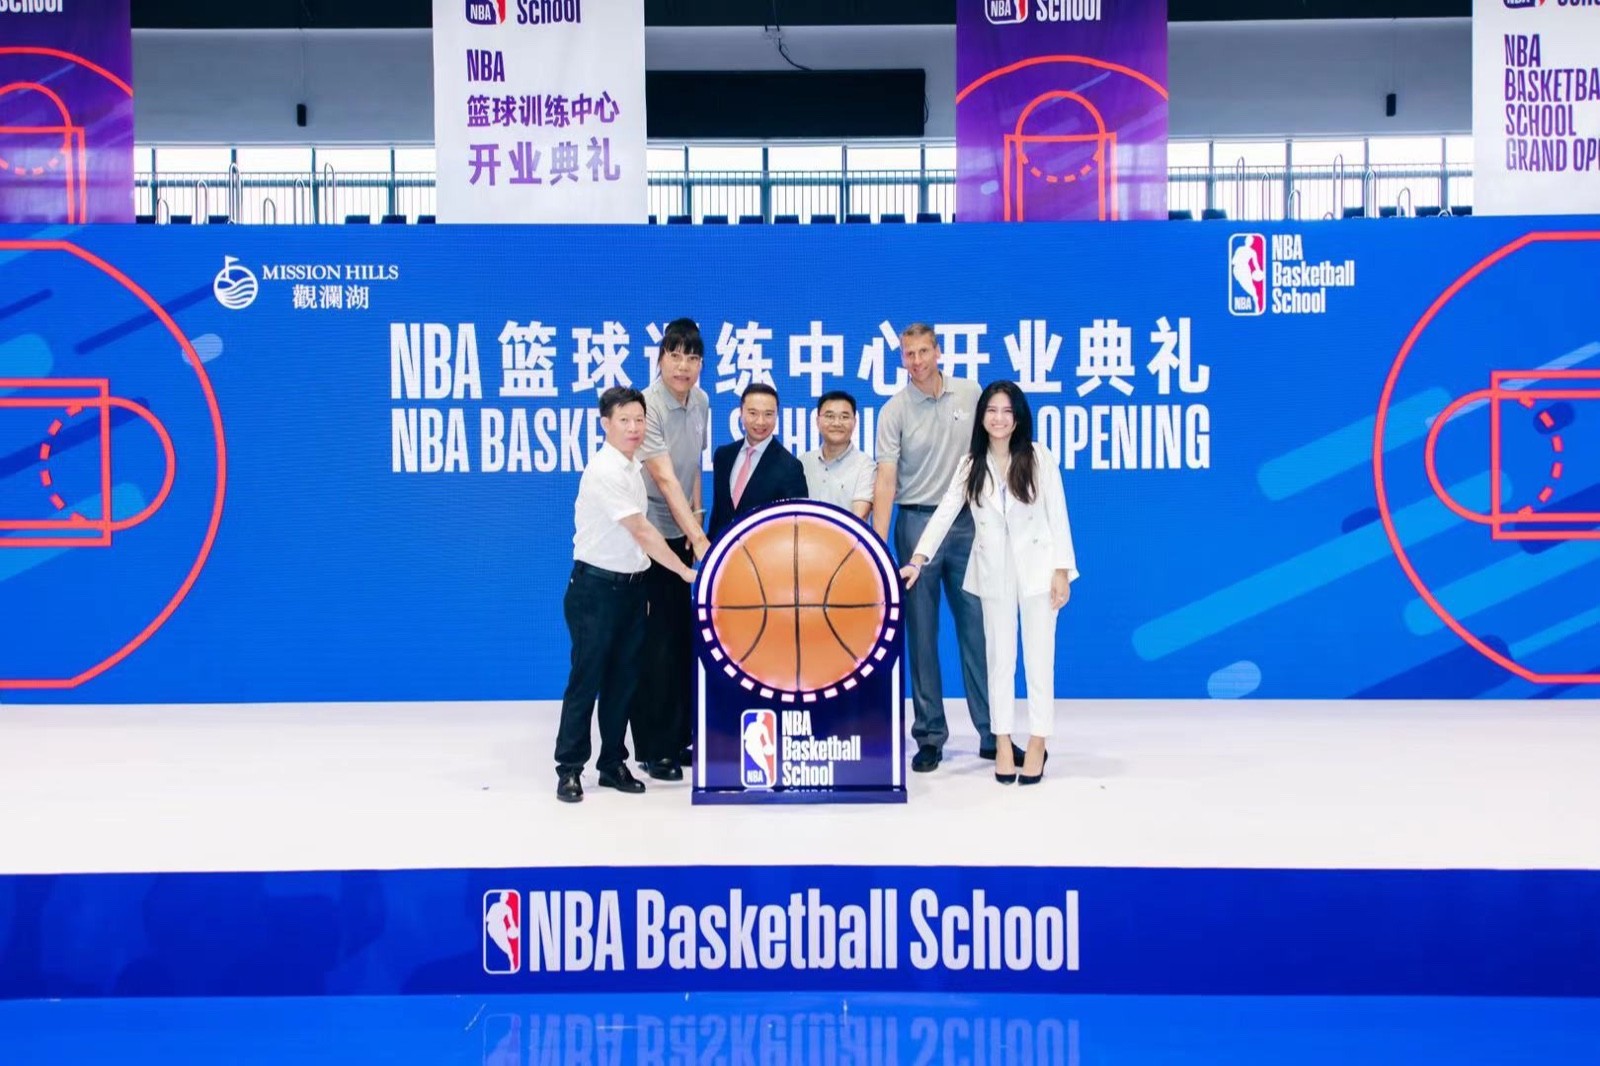 中国正式揭幕首个NBA篮球训练中心